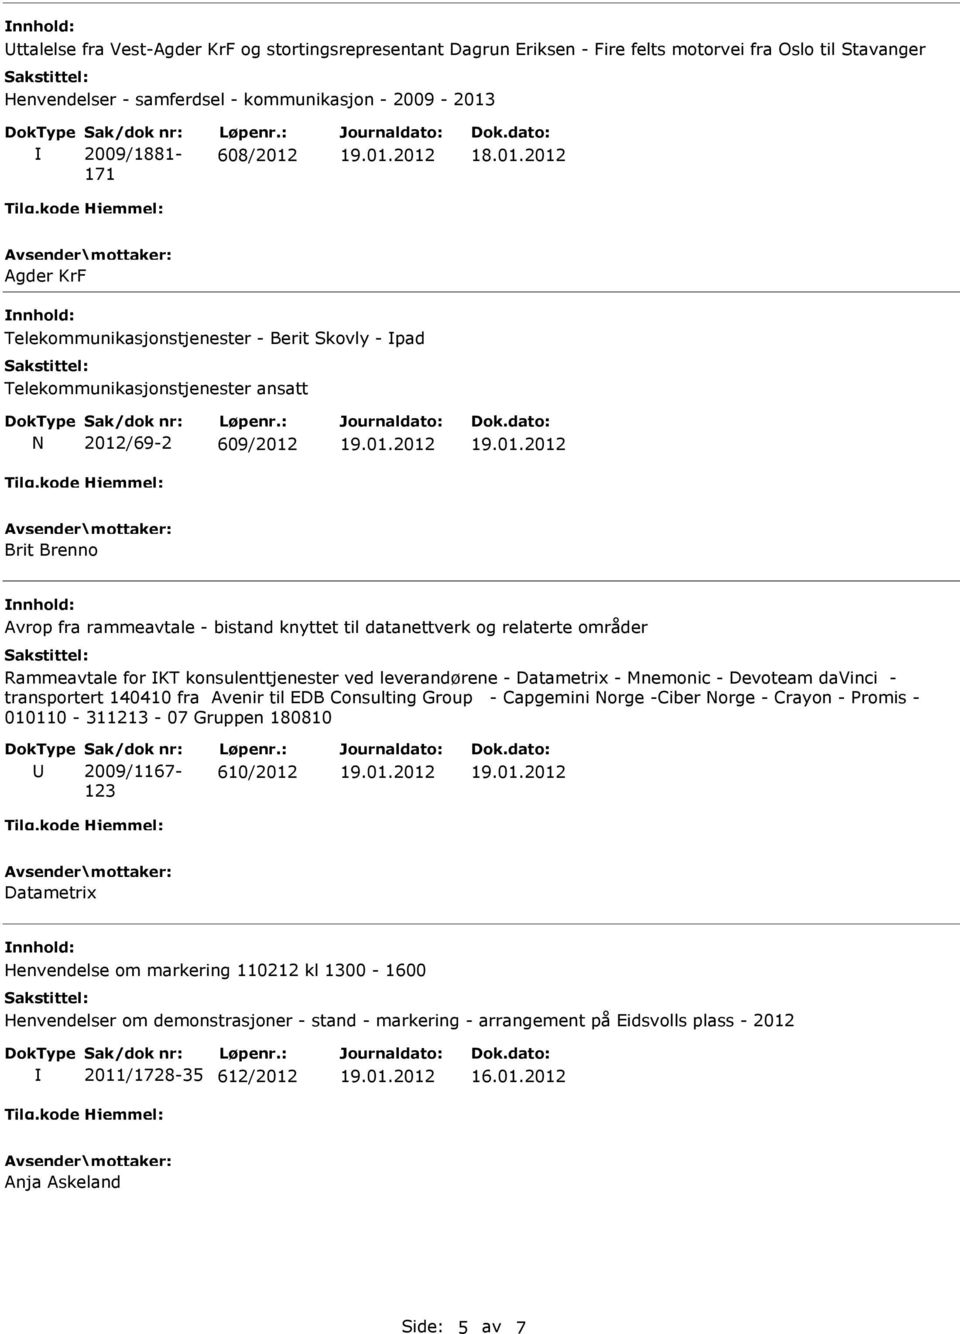 Rammeavtale for KT konsulenttjenester ved leverandørene - Datametrix - Mnemonic - Devoteam davinci - transportert 140410 fra Avenir til EDB Consulting Group - Capgemini Norge -Ciber Norge - Crayon -